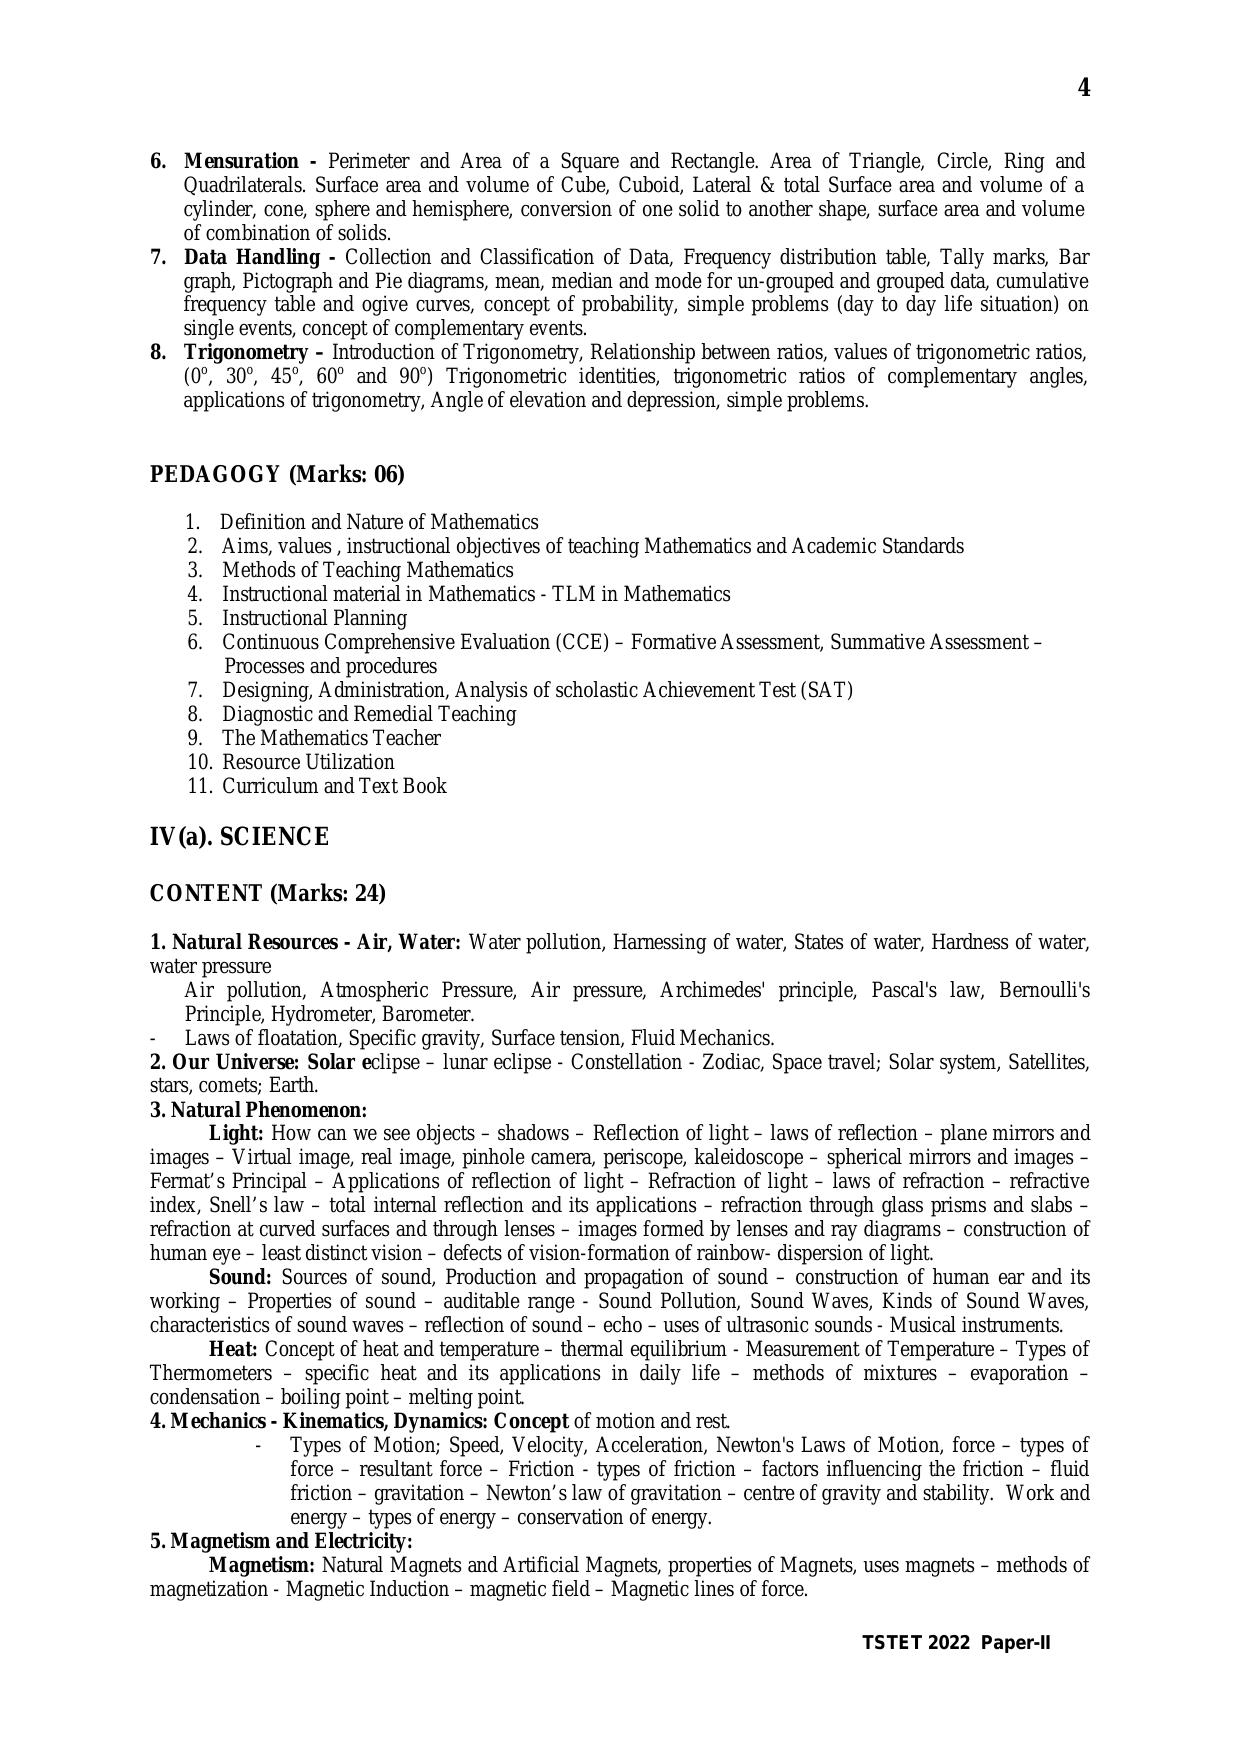 TS TET Syllabus for Paper 2 (Hindi) - Page 4